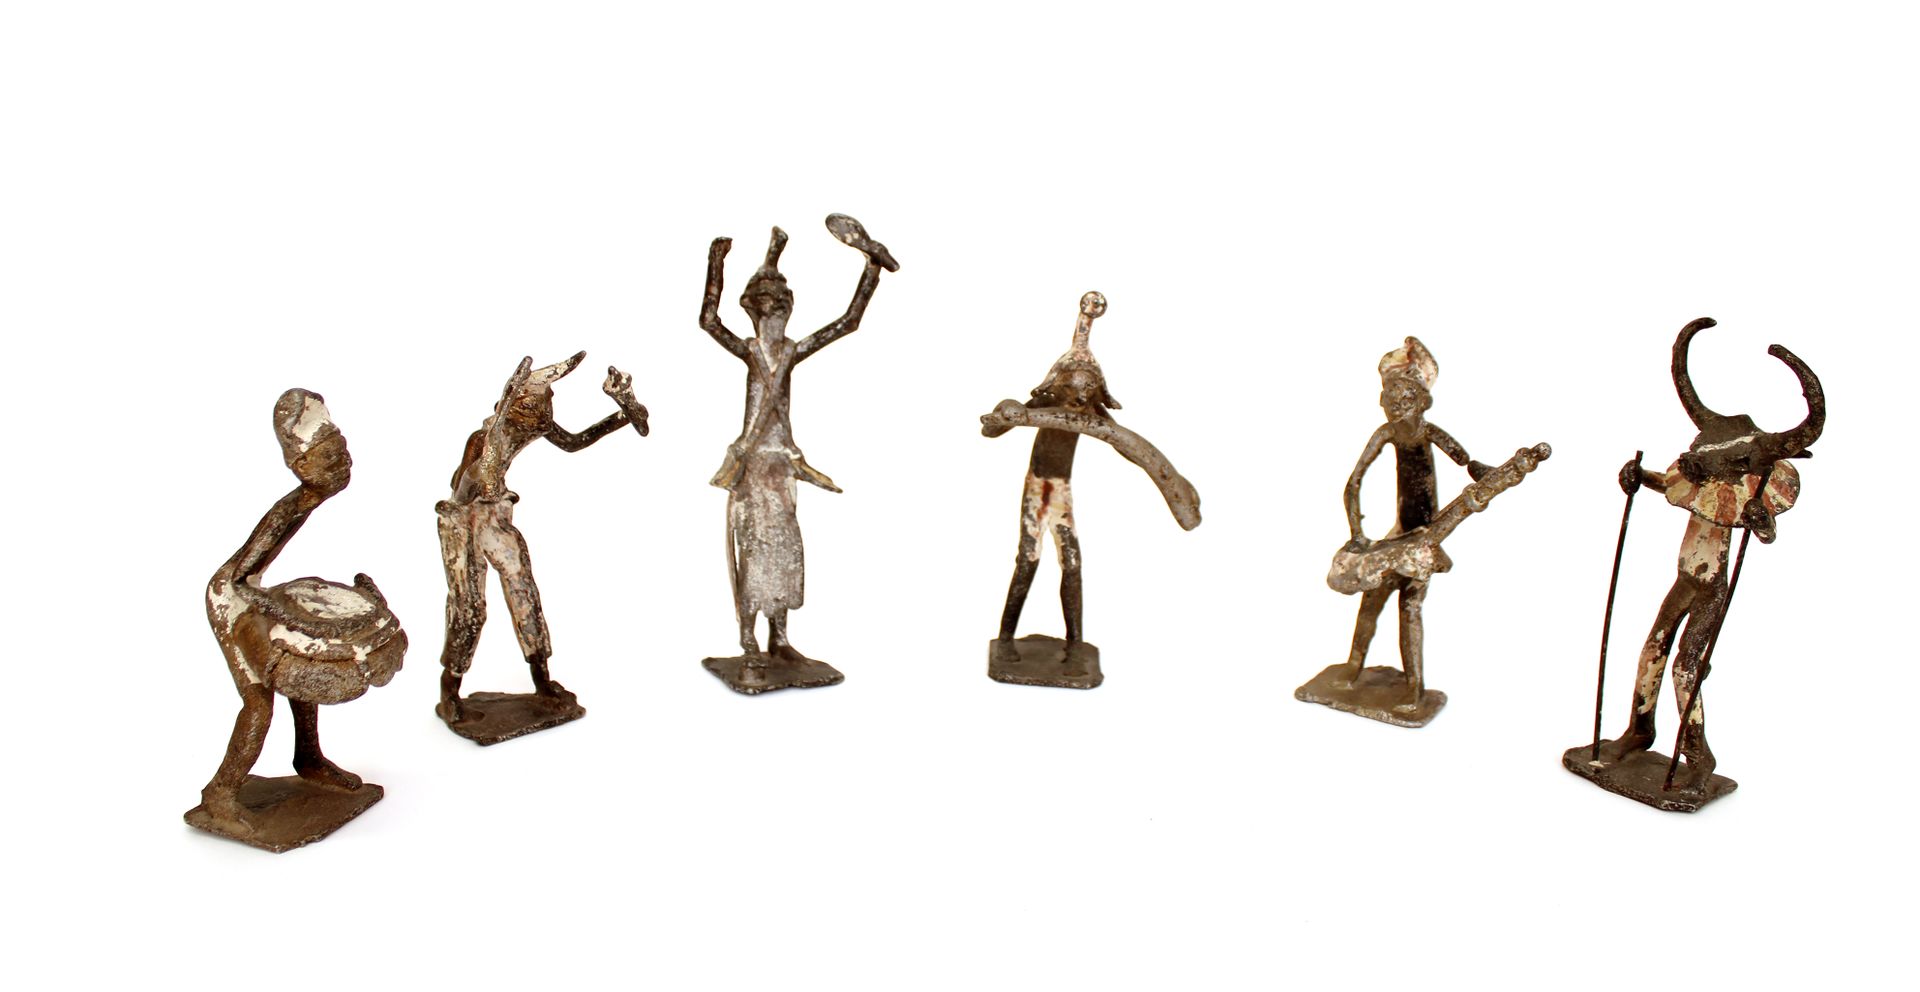 Null 非洲
八个铁制小雕像组成的组曲，代表音乐家和舞者参加仪式
20世纪下半叶
高度在12.5和16厘米之间